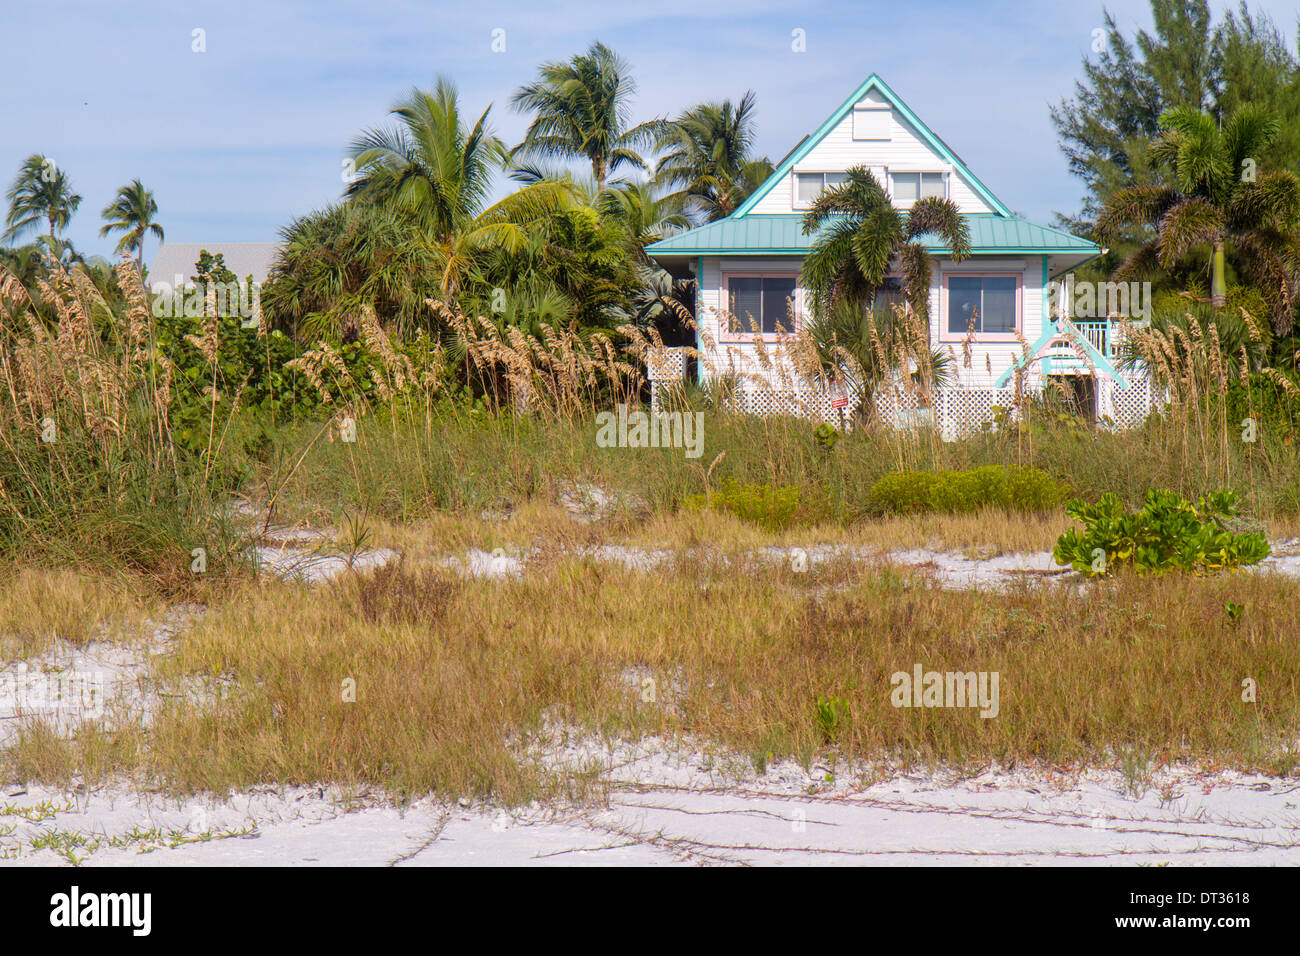 Florida Sanibel Barrier Island, Golfe du Mexique, plages, condominiums condos résidences appartements appartement plat Fla Banque D'Images